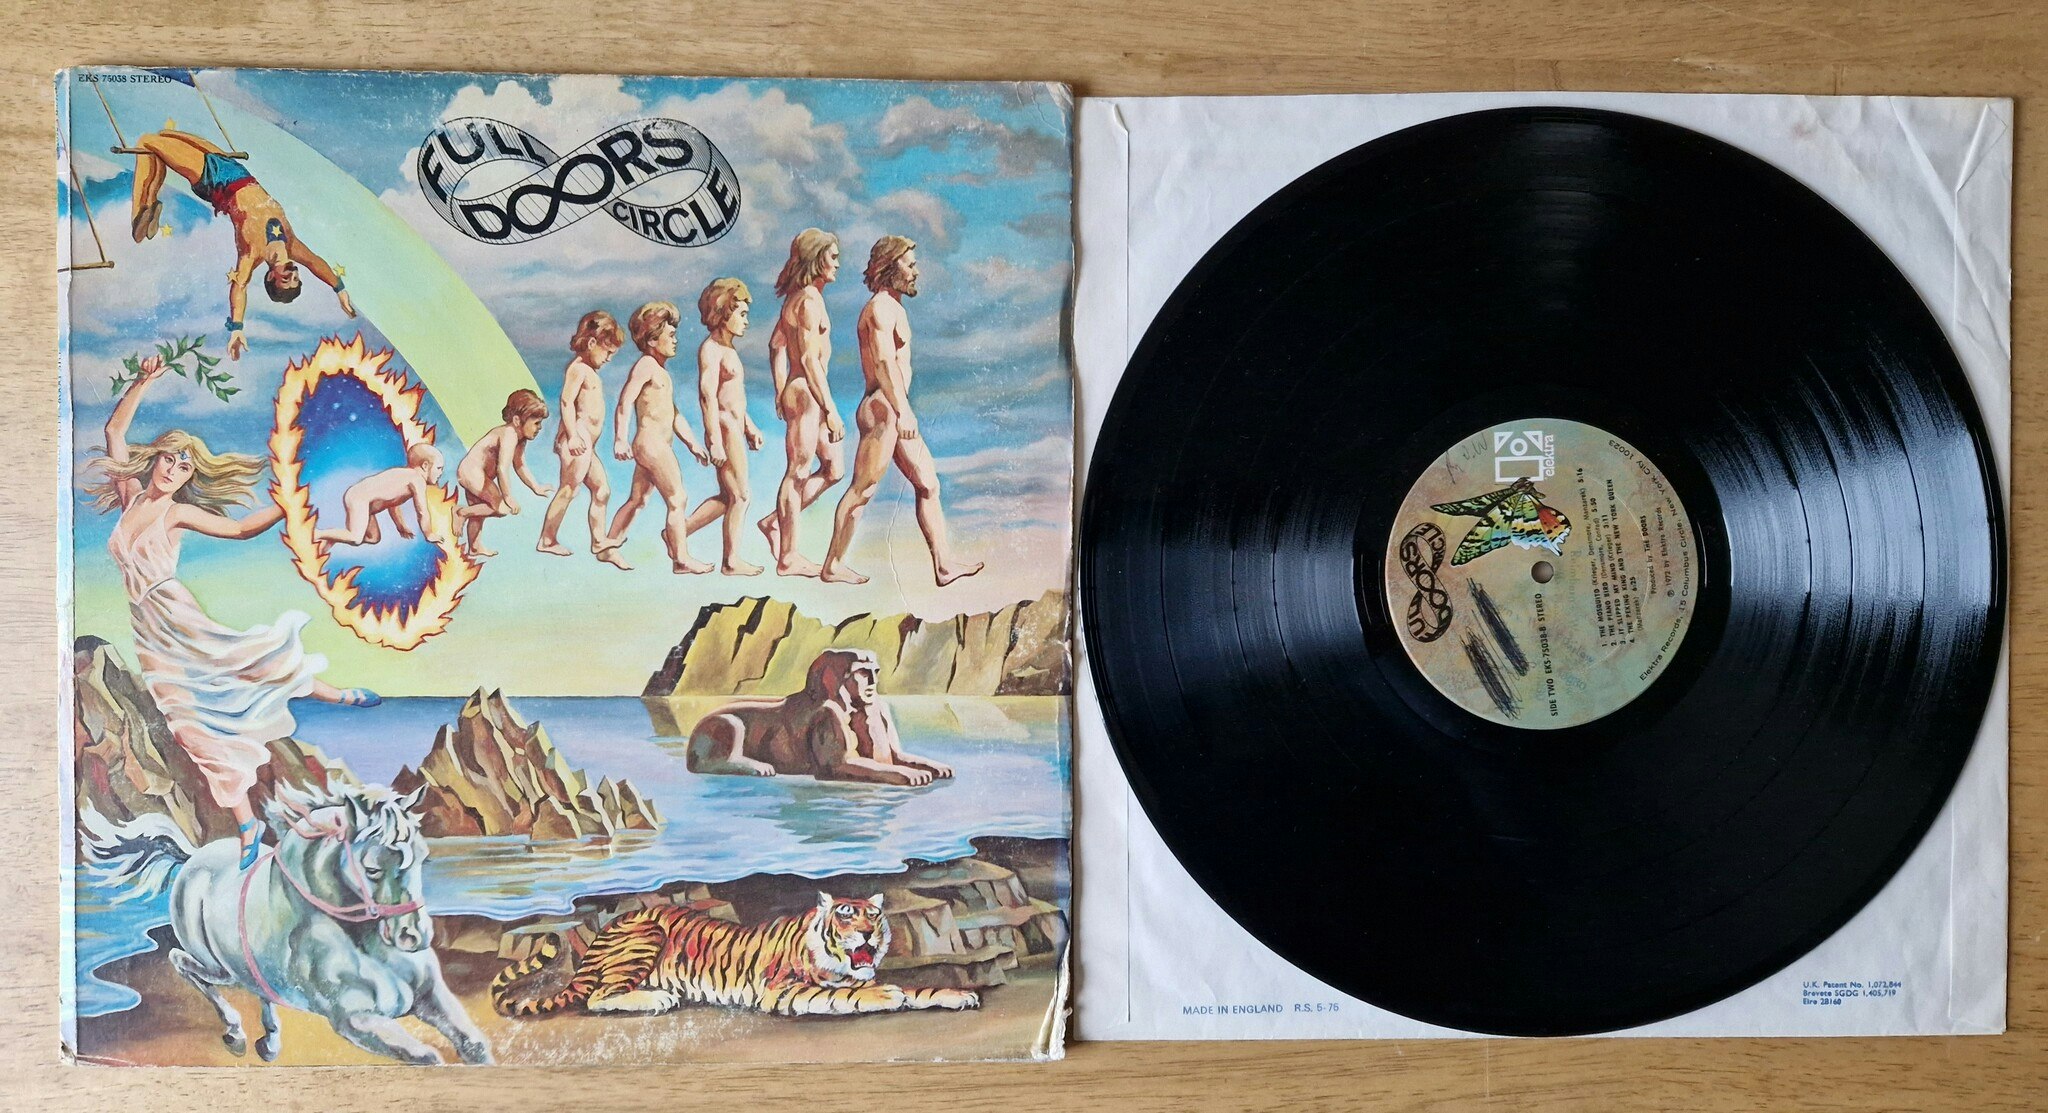 The Doors, Full Circle. Vinyl LP